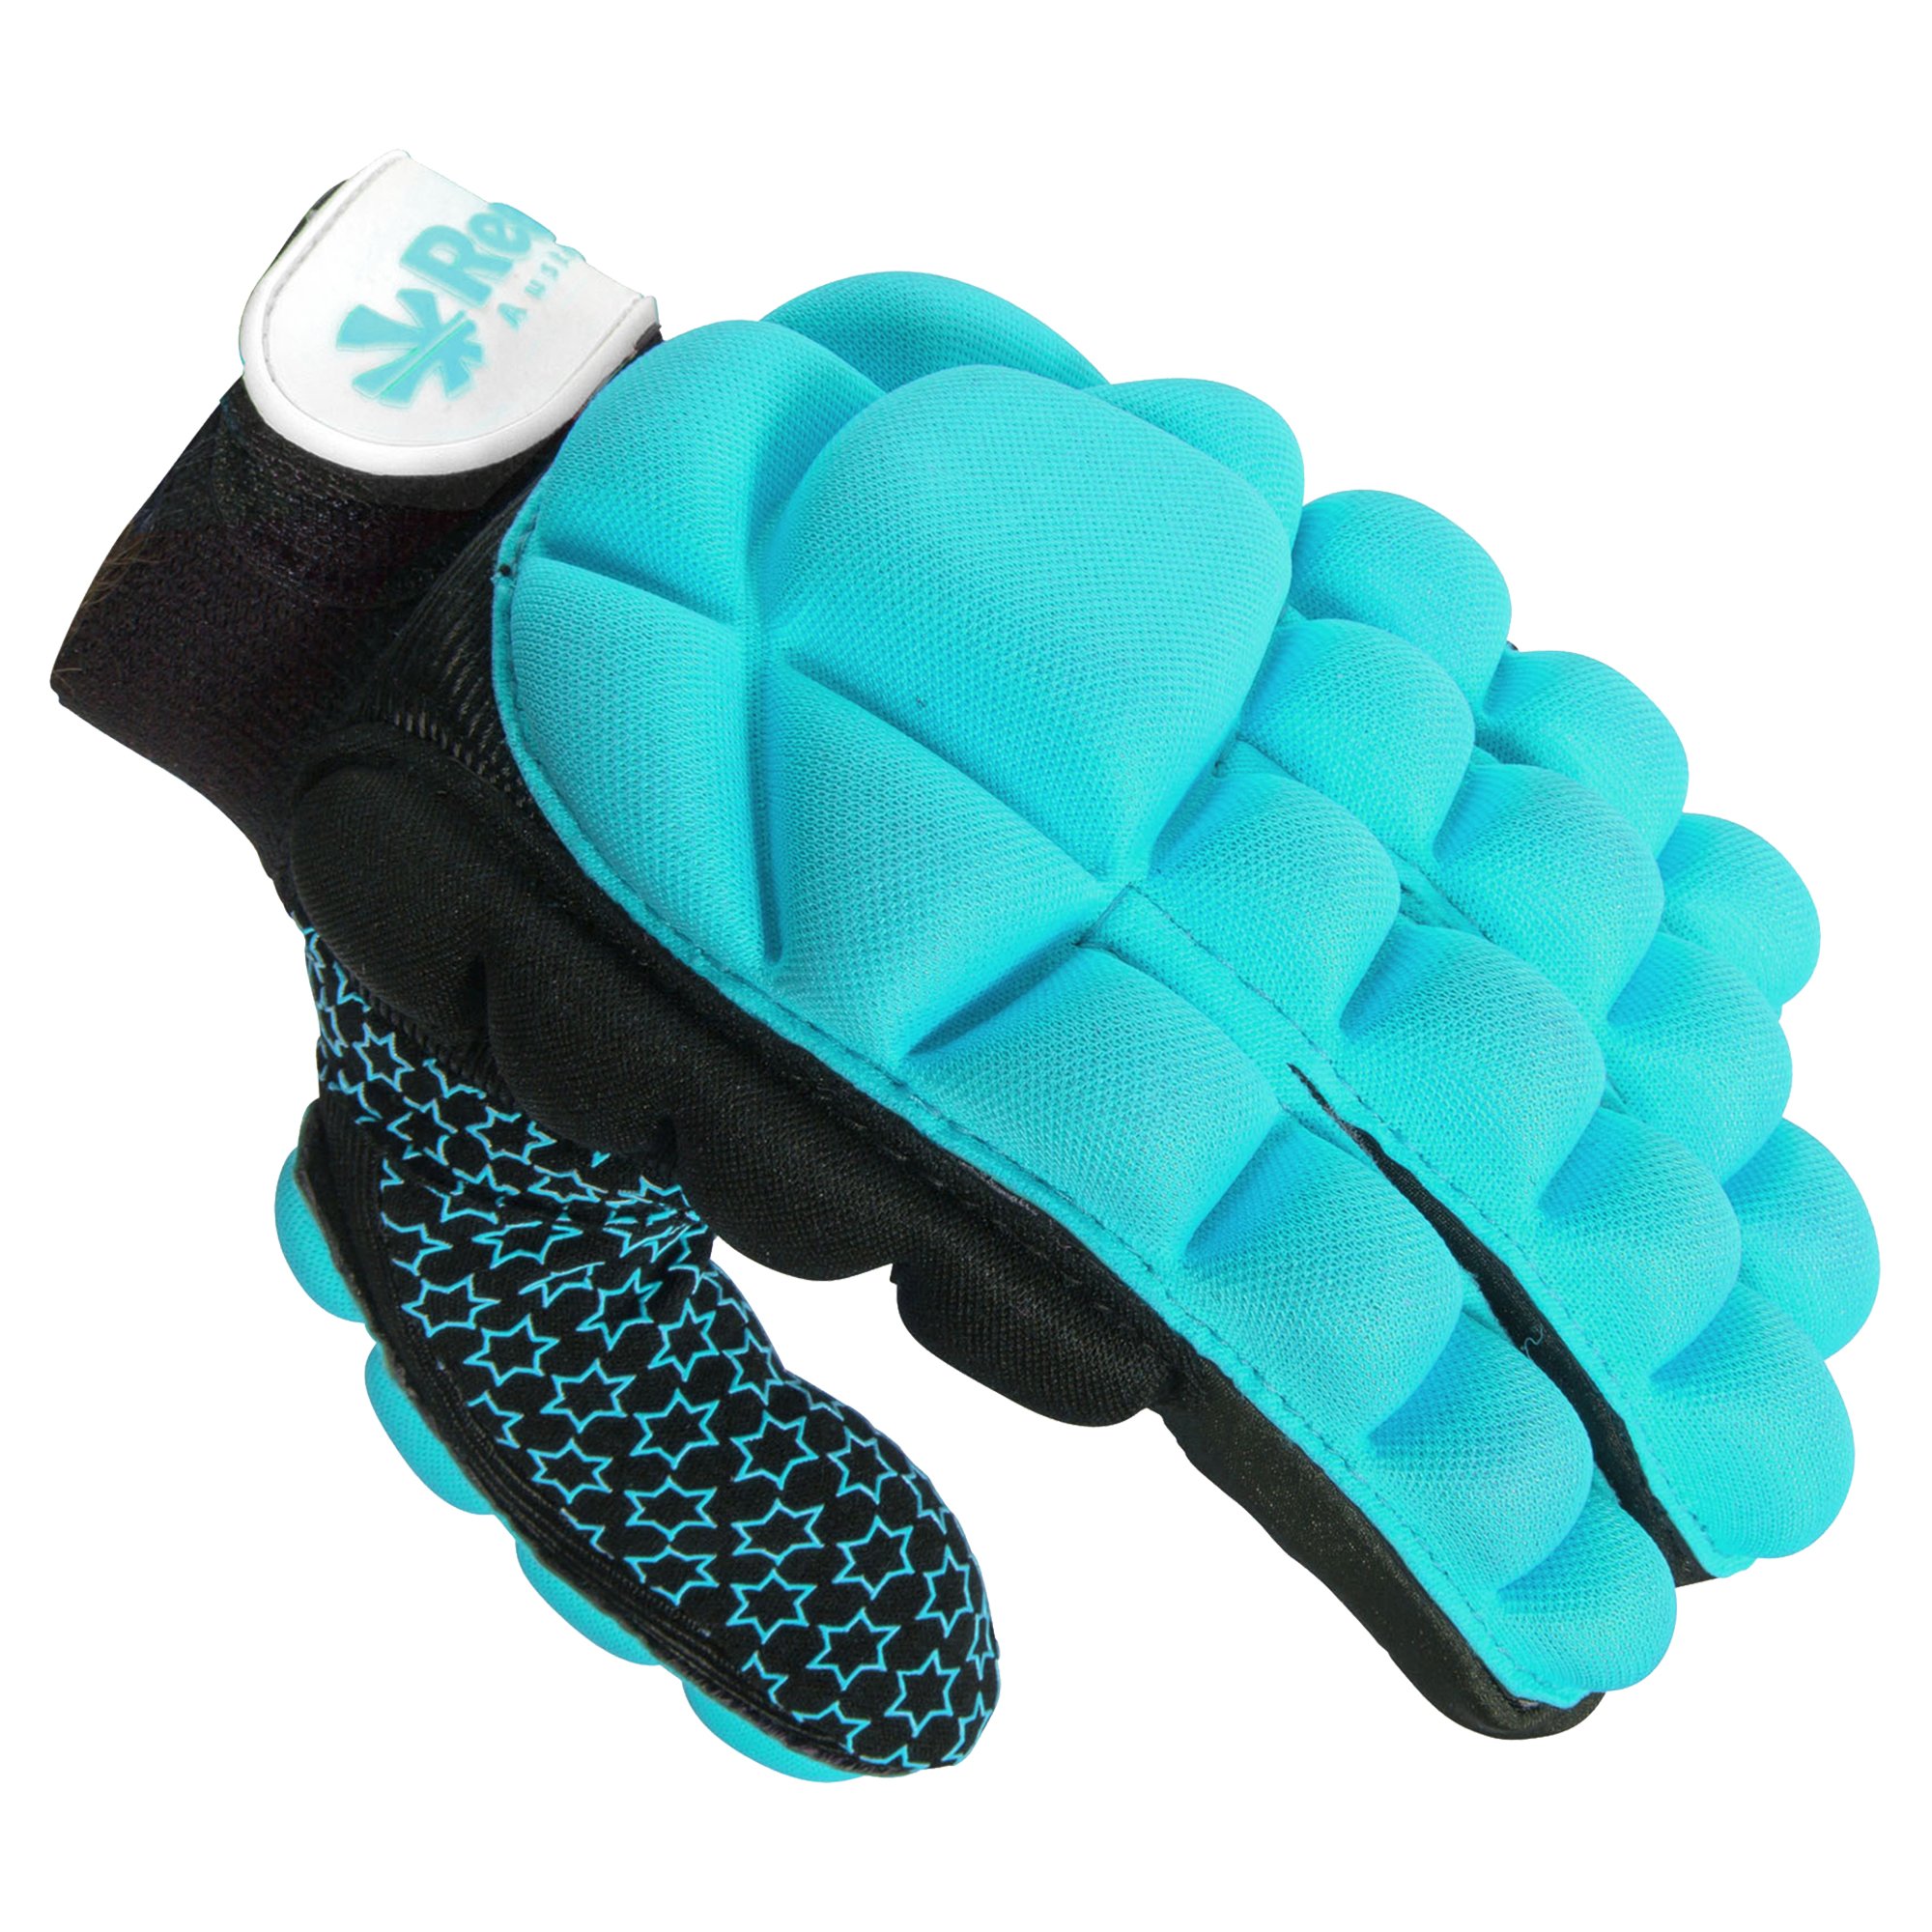 Reece Australia Comfort Full Finger Glove